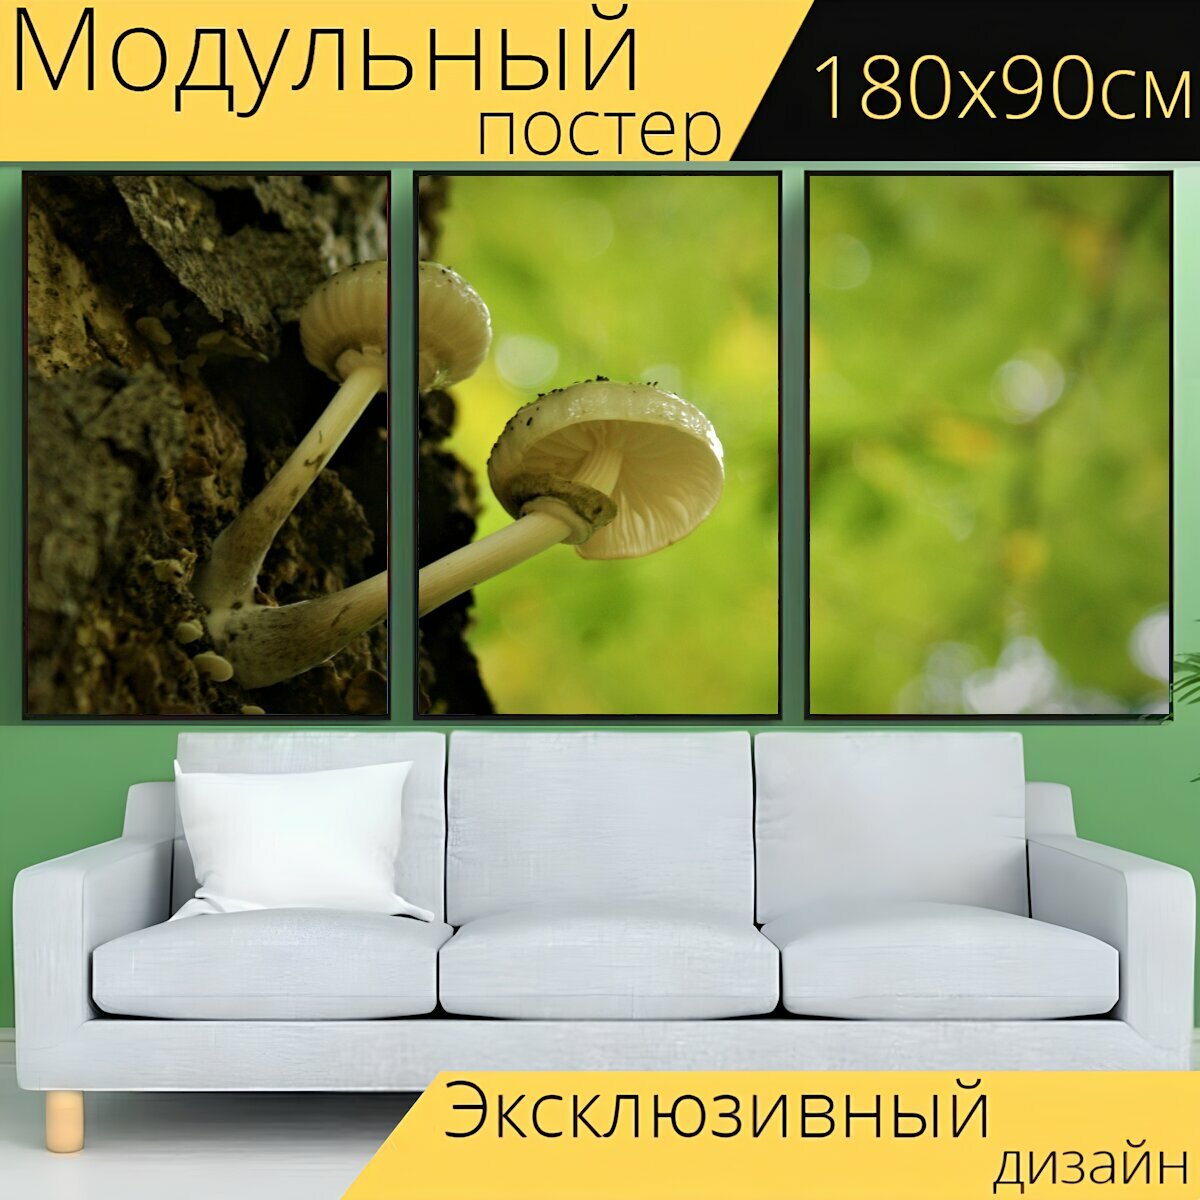 Модульный постер "Гриб, грибок, грибы" 180 x 90 см. для интерьера